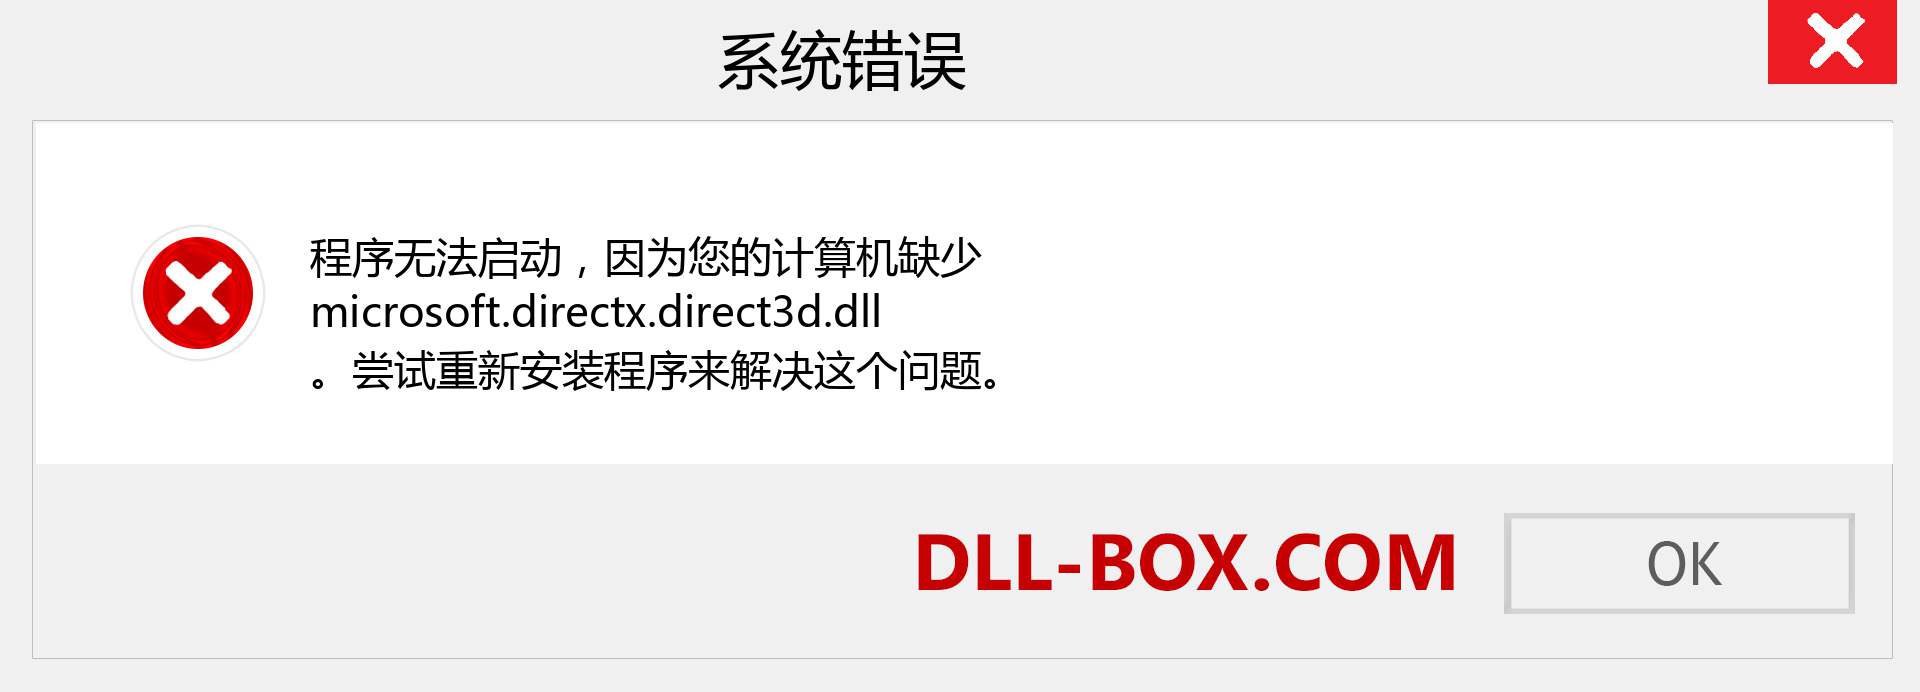 microsoft.directx.direct3d.dll 文件丢失？。 适用于 Windows 7、8、10 的下载 - 修复 Windows、照片、图像上的 microsoft.directx.direct3d dll 丢失错误